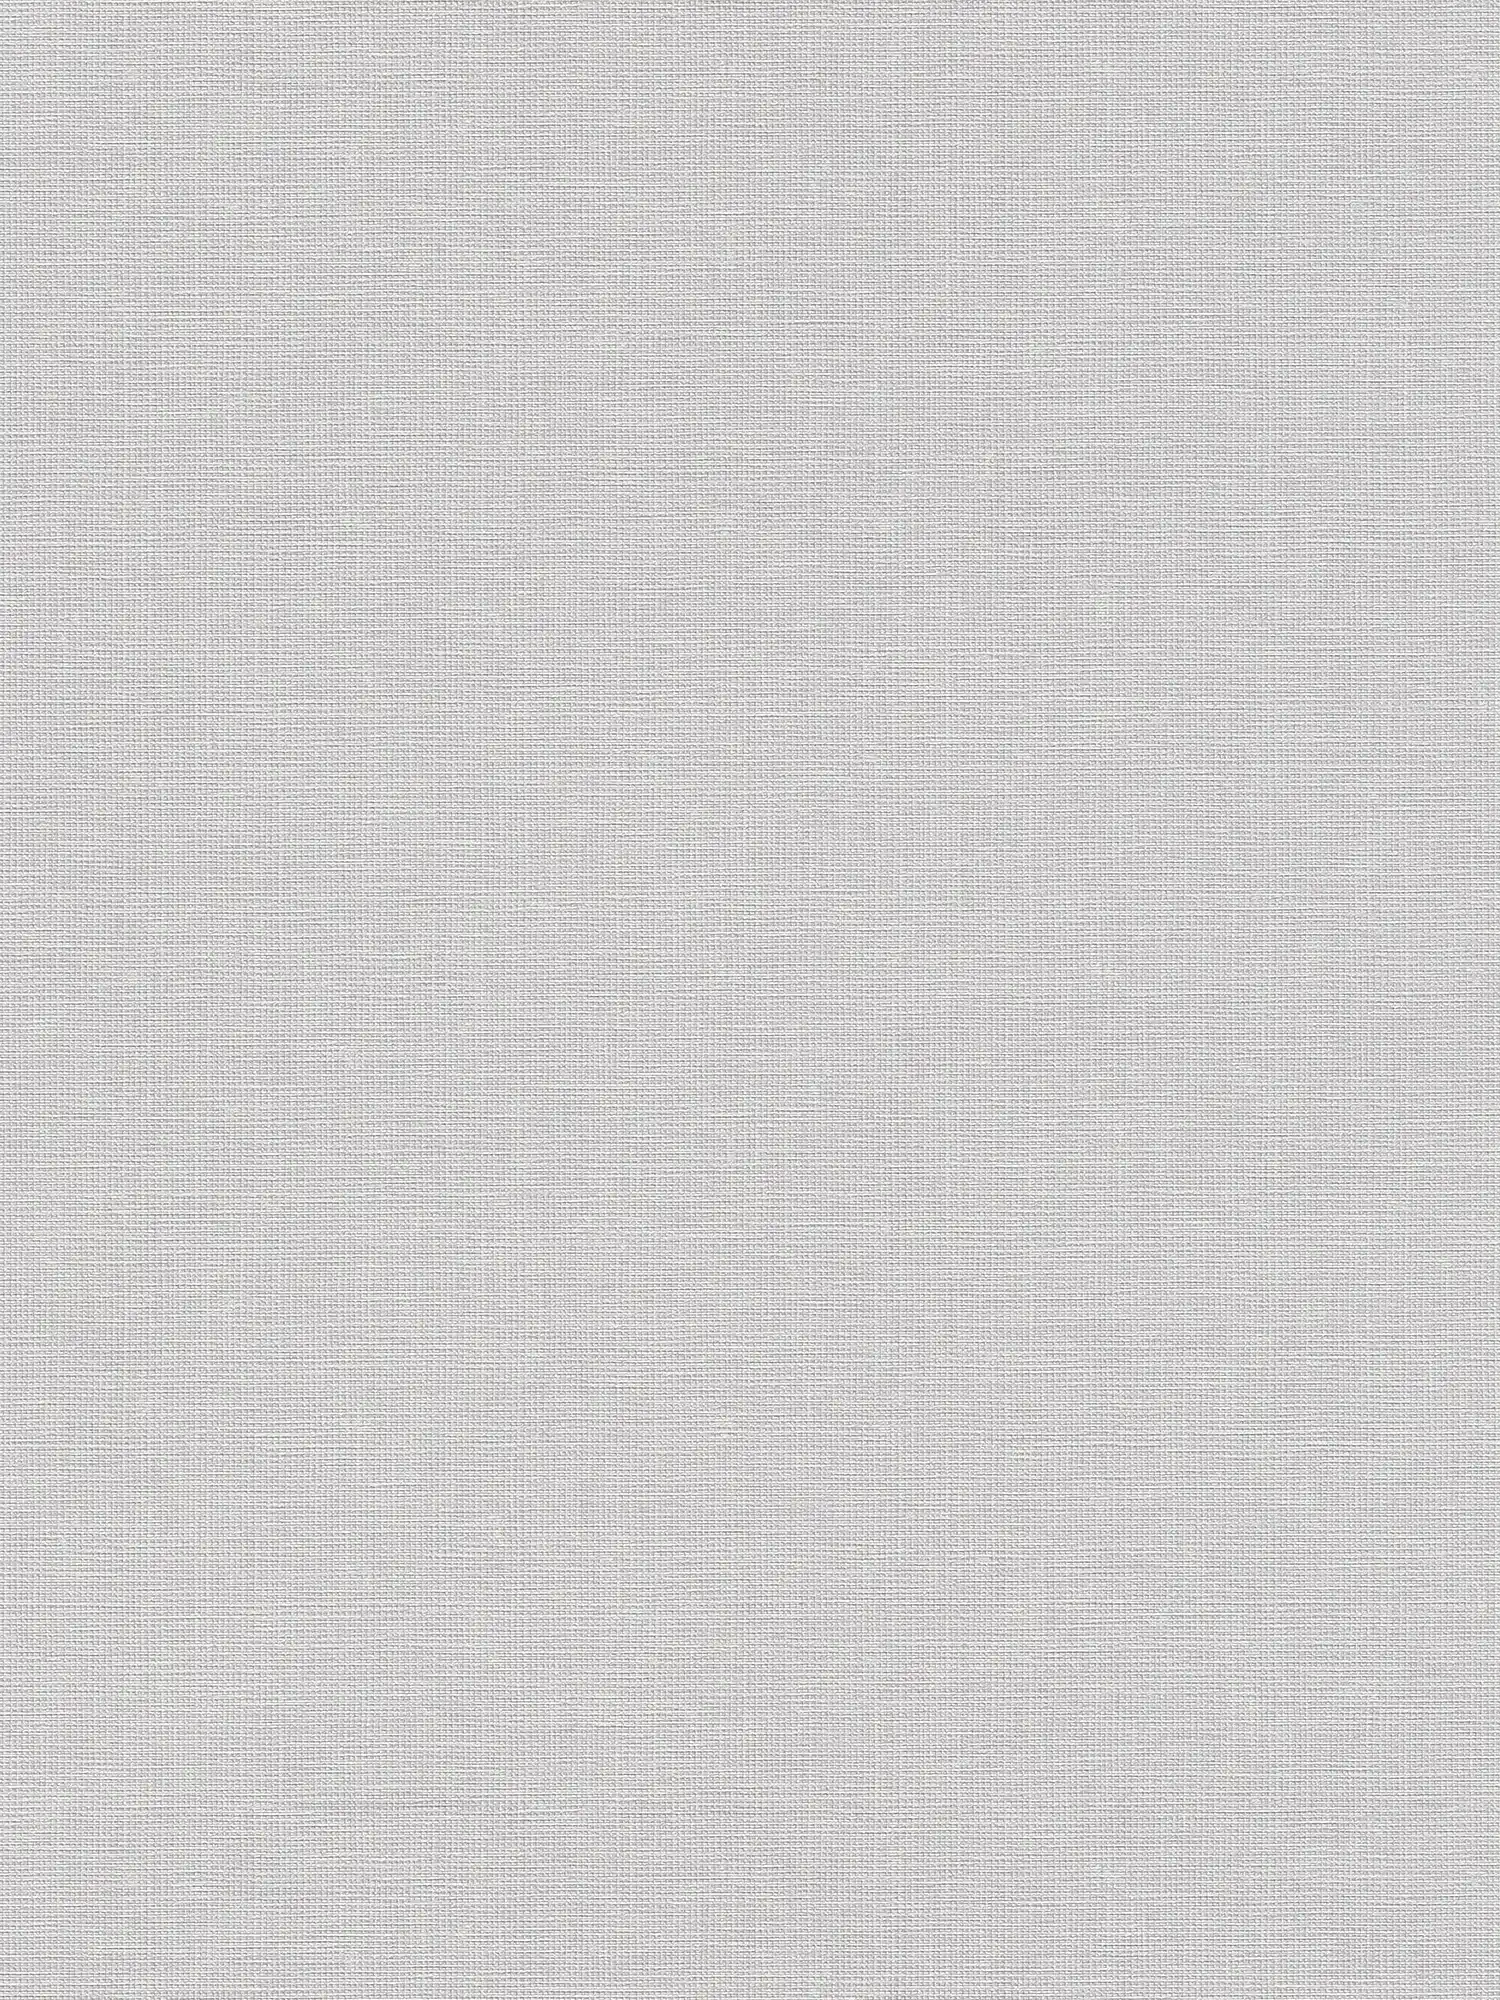 Non-woven wallpaper plain with linen texture - grey
